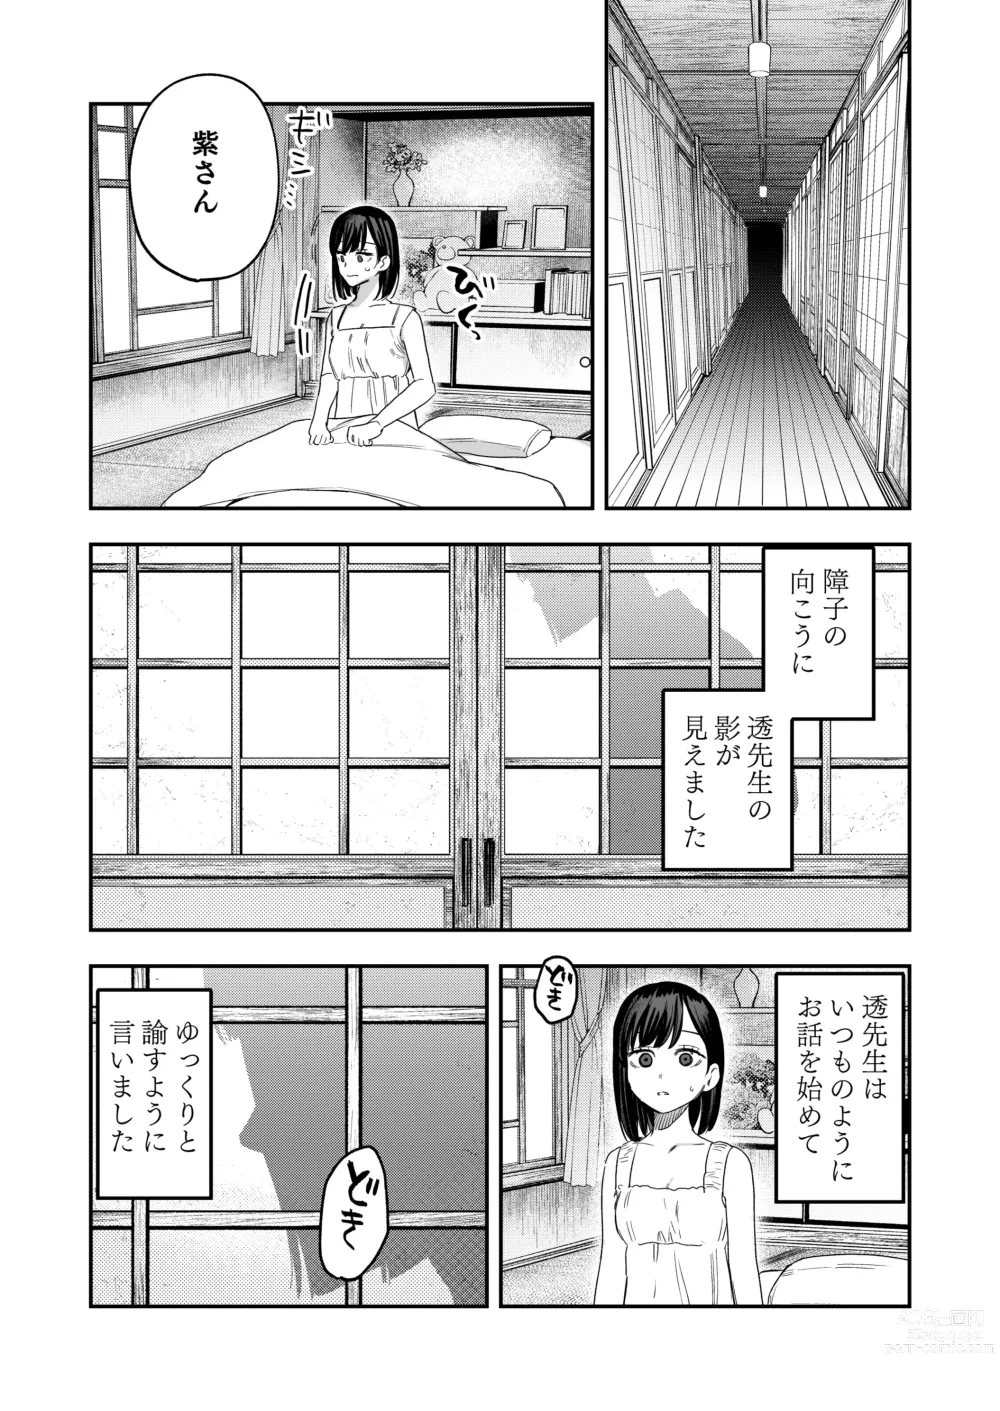 Page 13 of doujinshi Hachiroku Sou - Ieori to Hana Katajikena no Yome